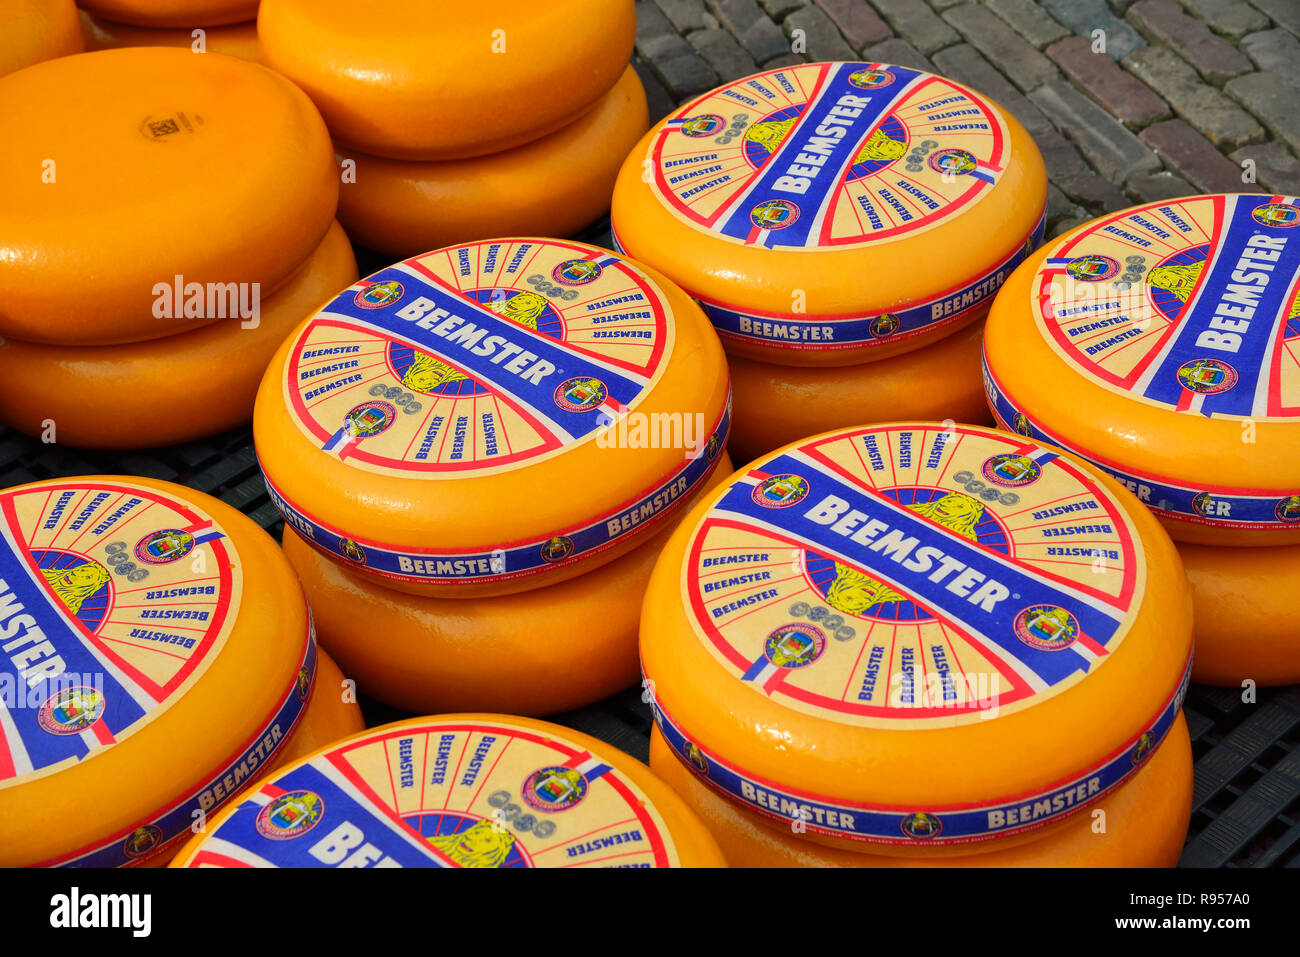 Umläufe von Beemster, holländischen Käse (Gouda) aufgereiht auf Waagplein während des traditionellen Käsemarkt in Alkmaar, Holland, Niederlande, statt Stockfoto